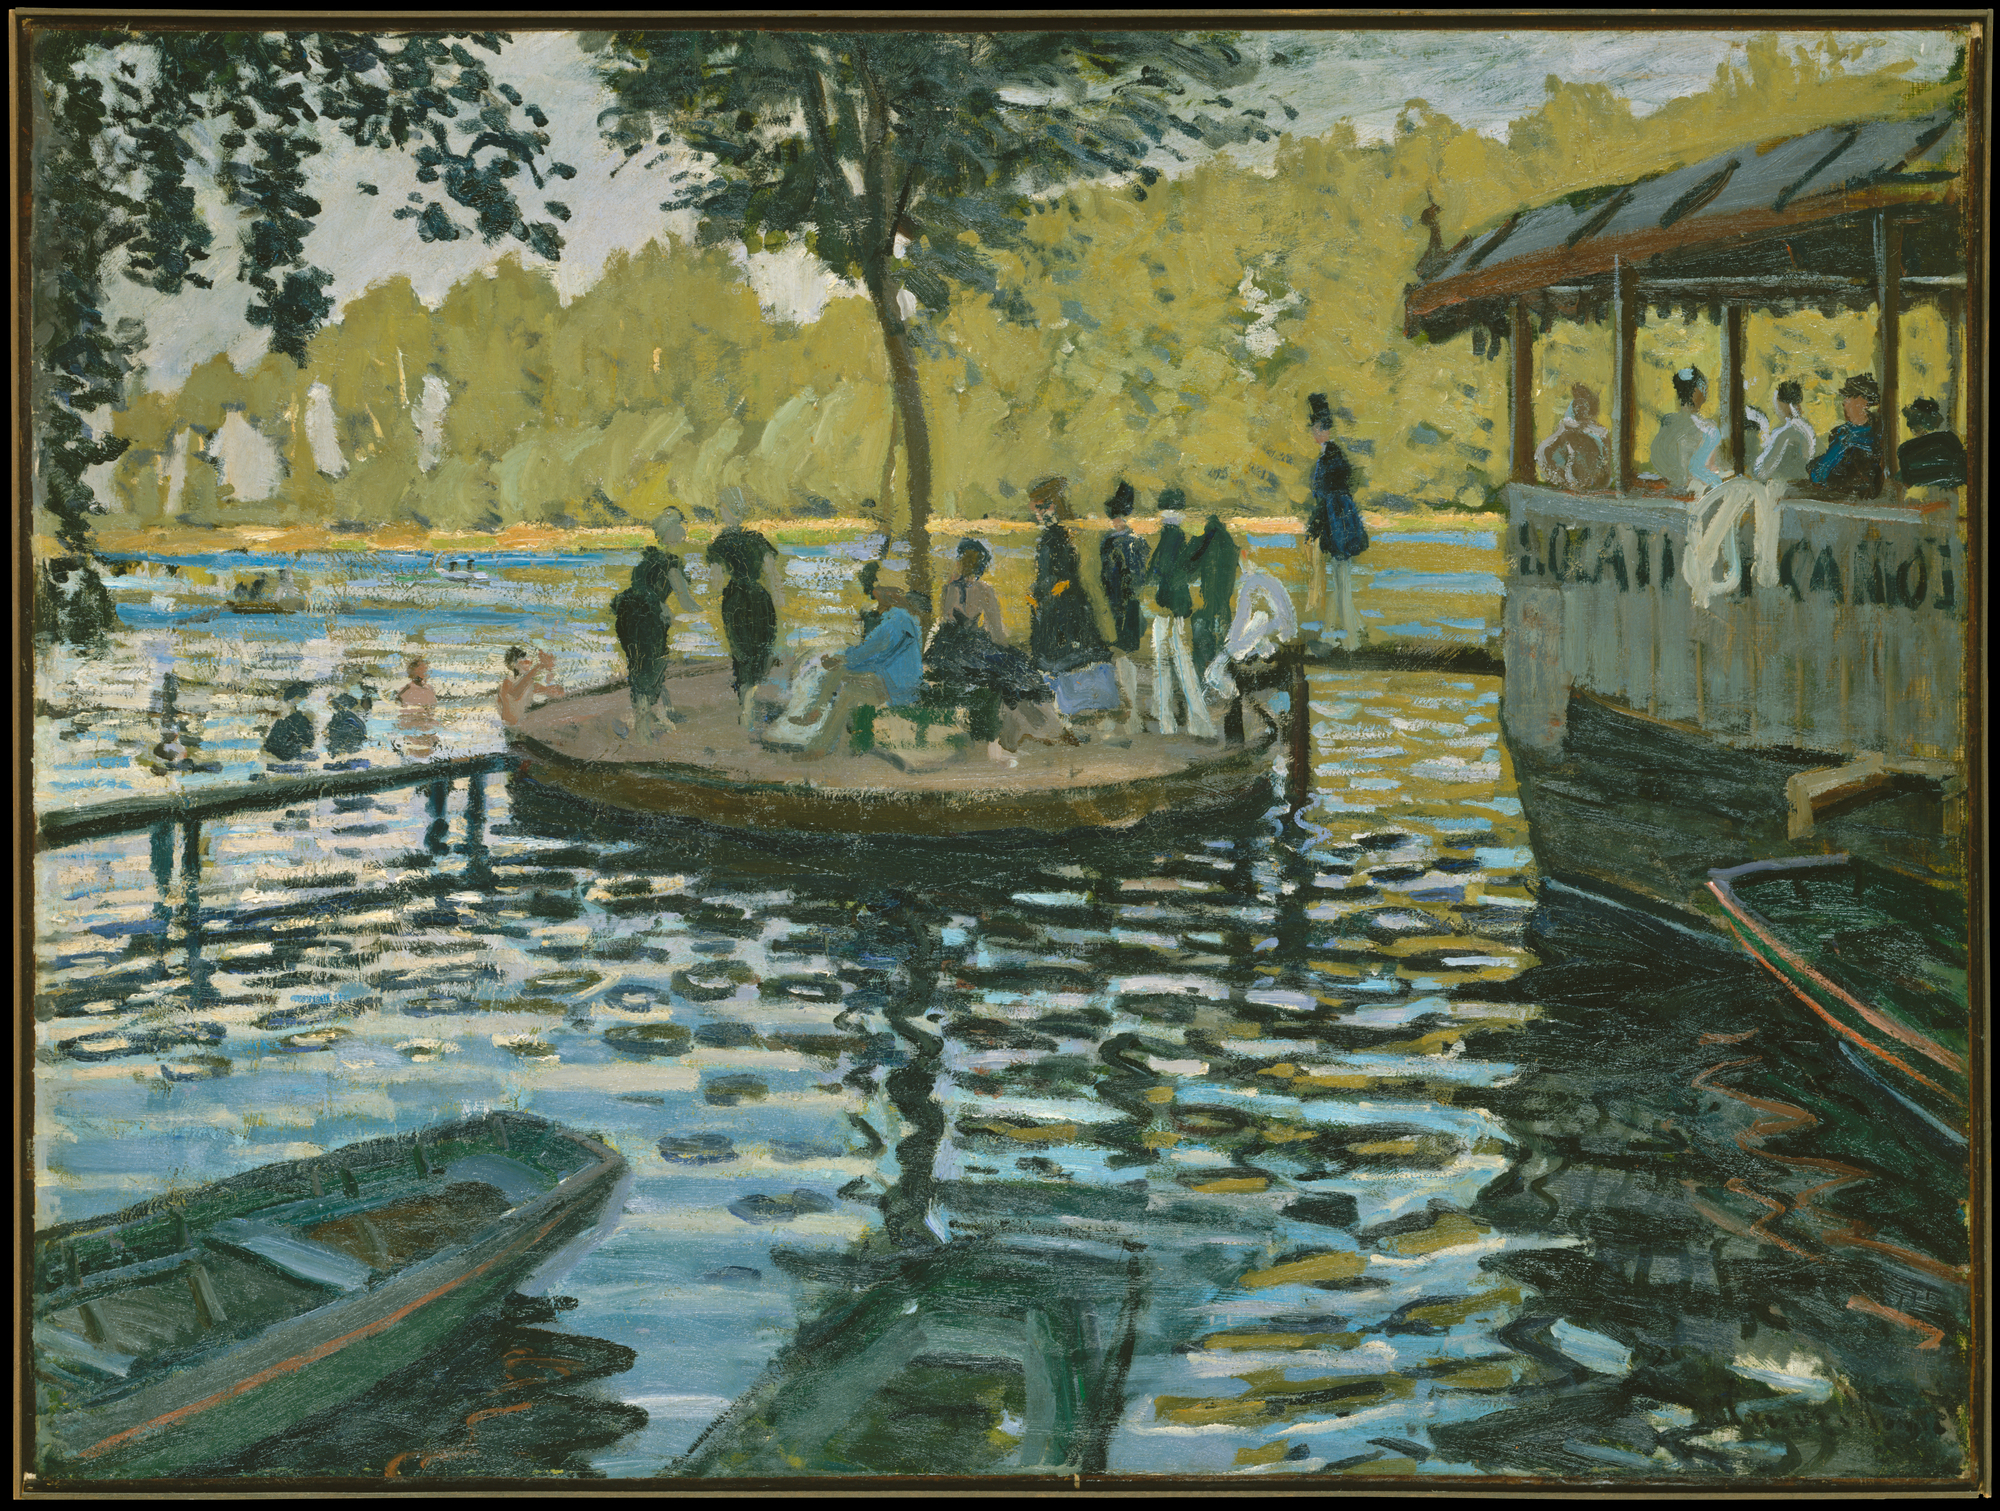 La Grenouillère by Claude Monet - 1869 - 74.6 × 99.7 cm 